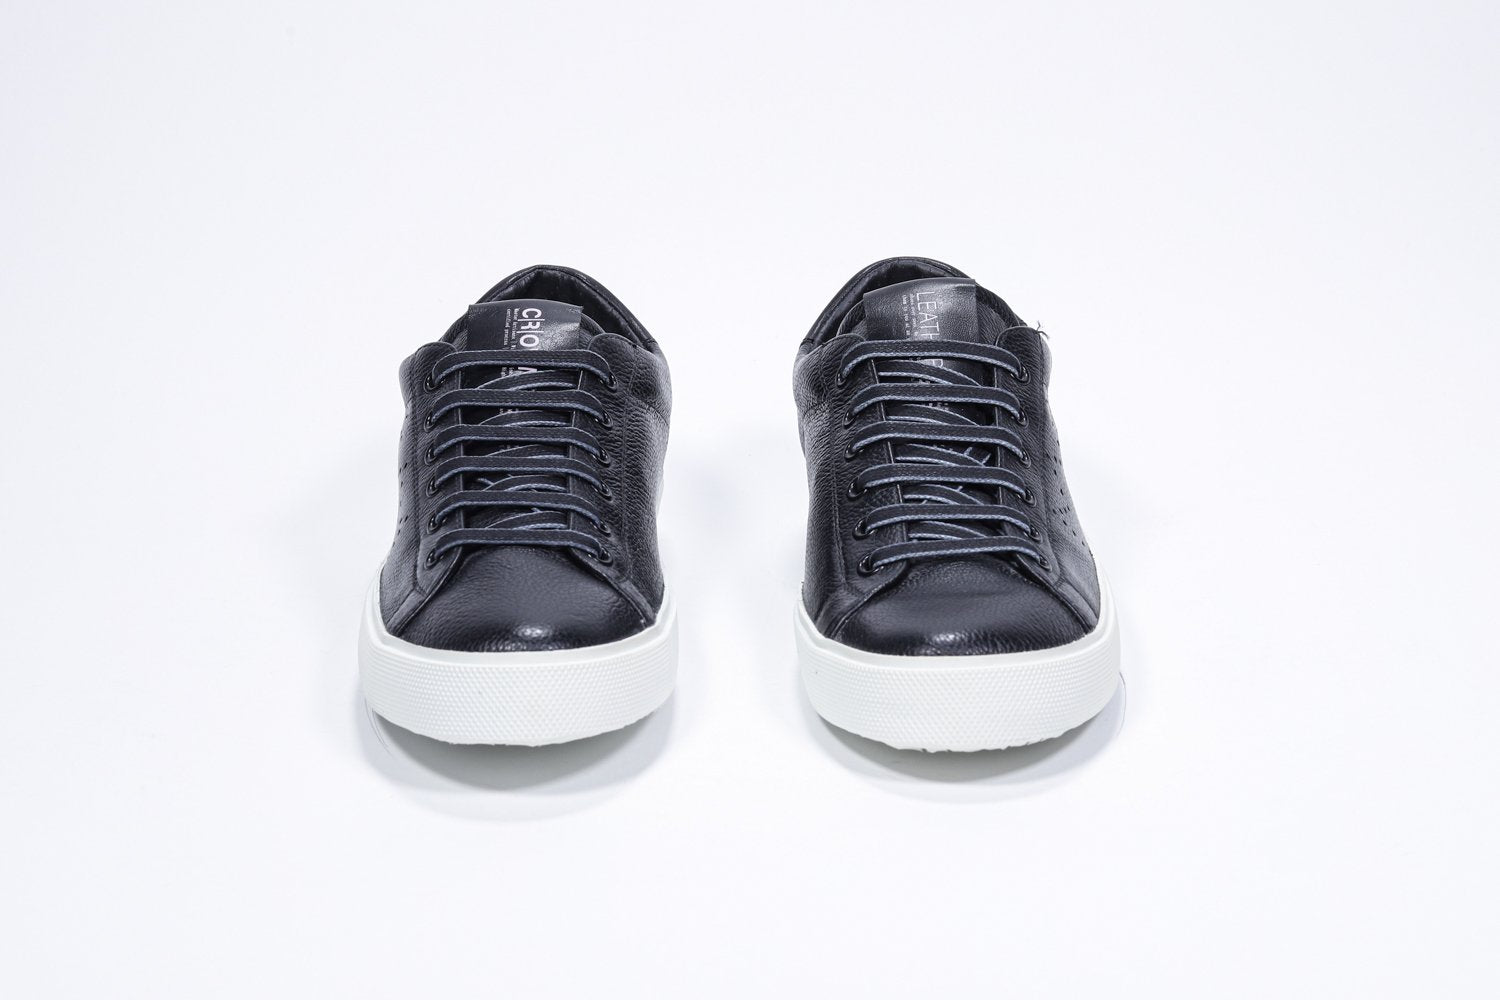 Vue de face de la chaussure basse noire sneaker avec le logo perforé de la couronne sur la tige. Dessus en cuir et semelle en caoutchouc blanc.